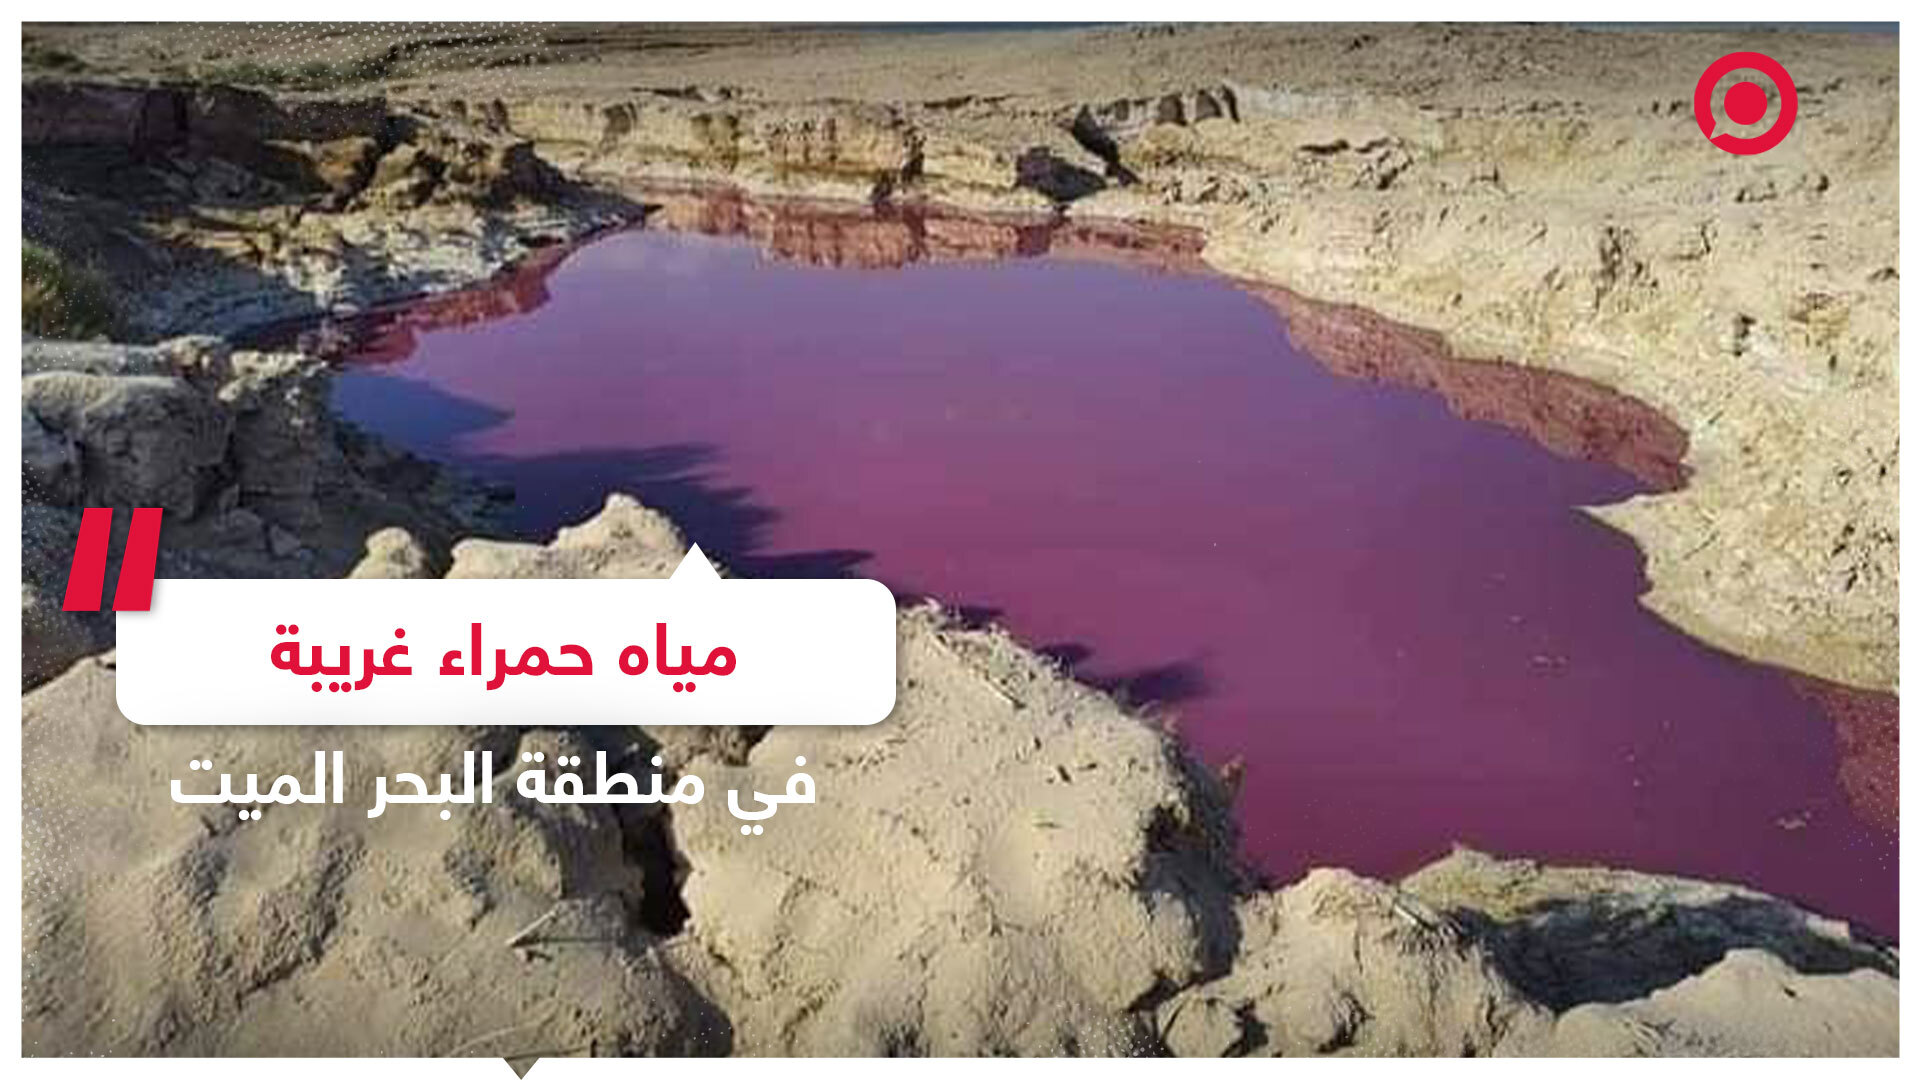 صور غريبة لبركة بمياه حمراء في منطقة البحر الميت